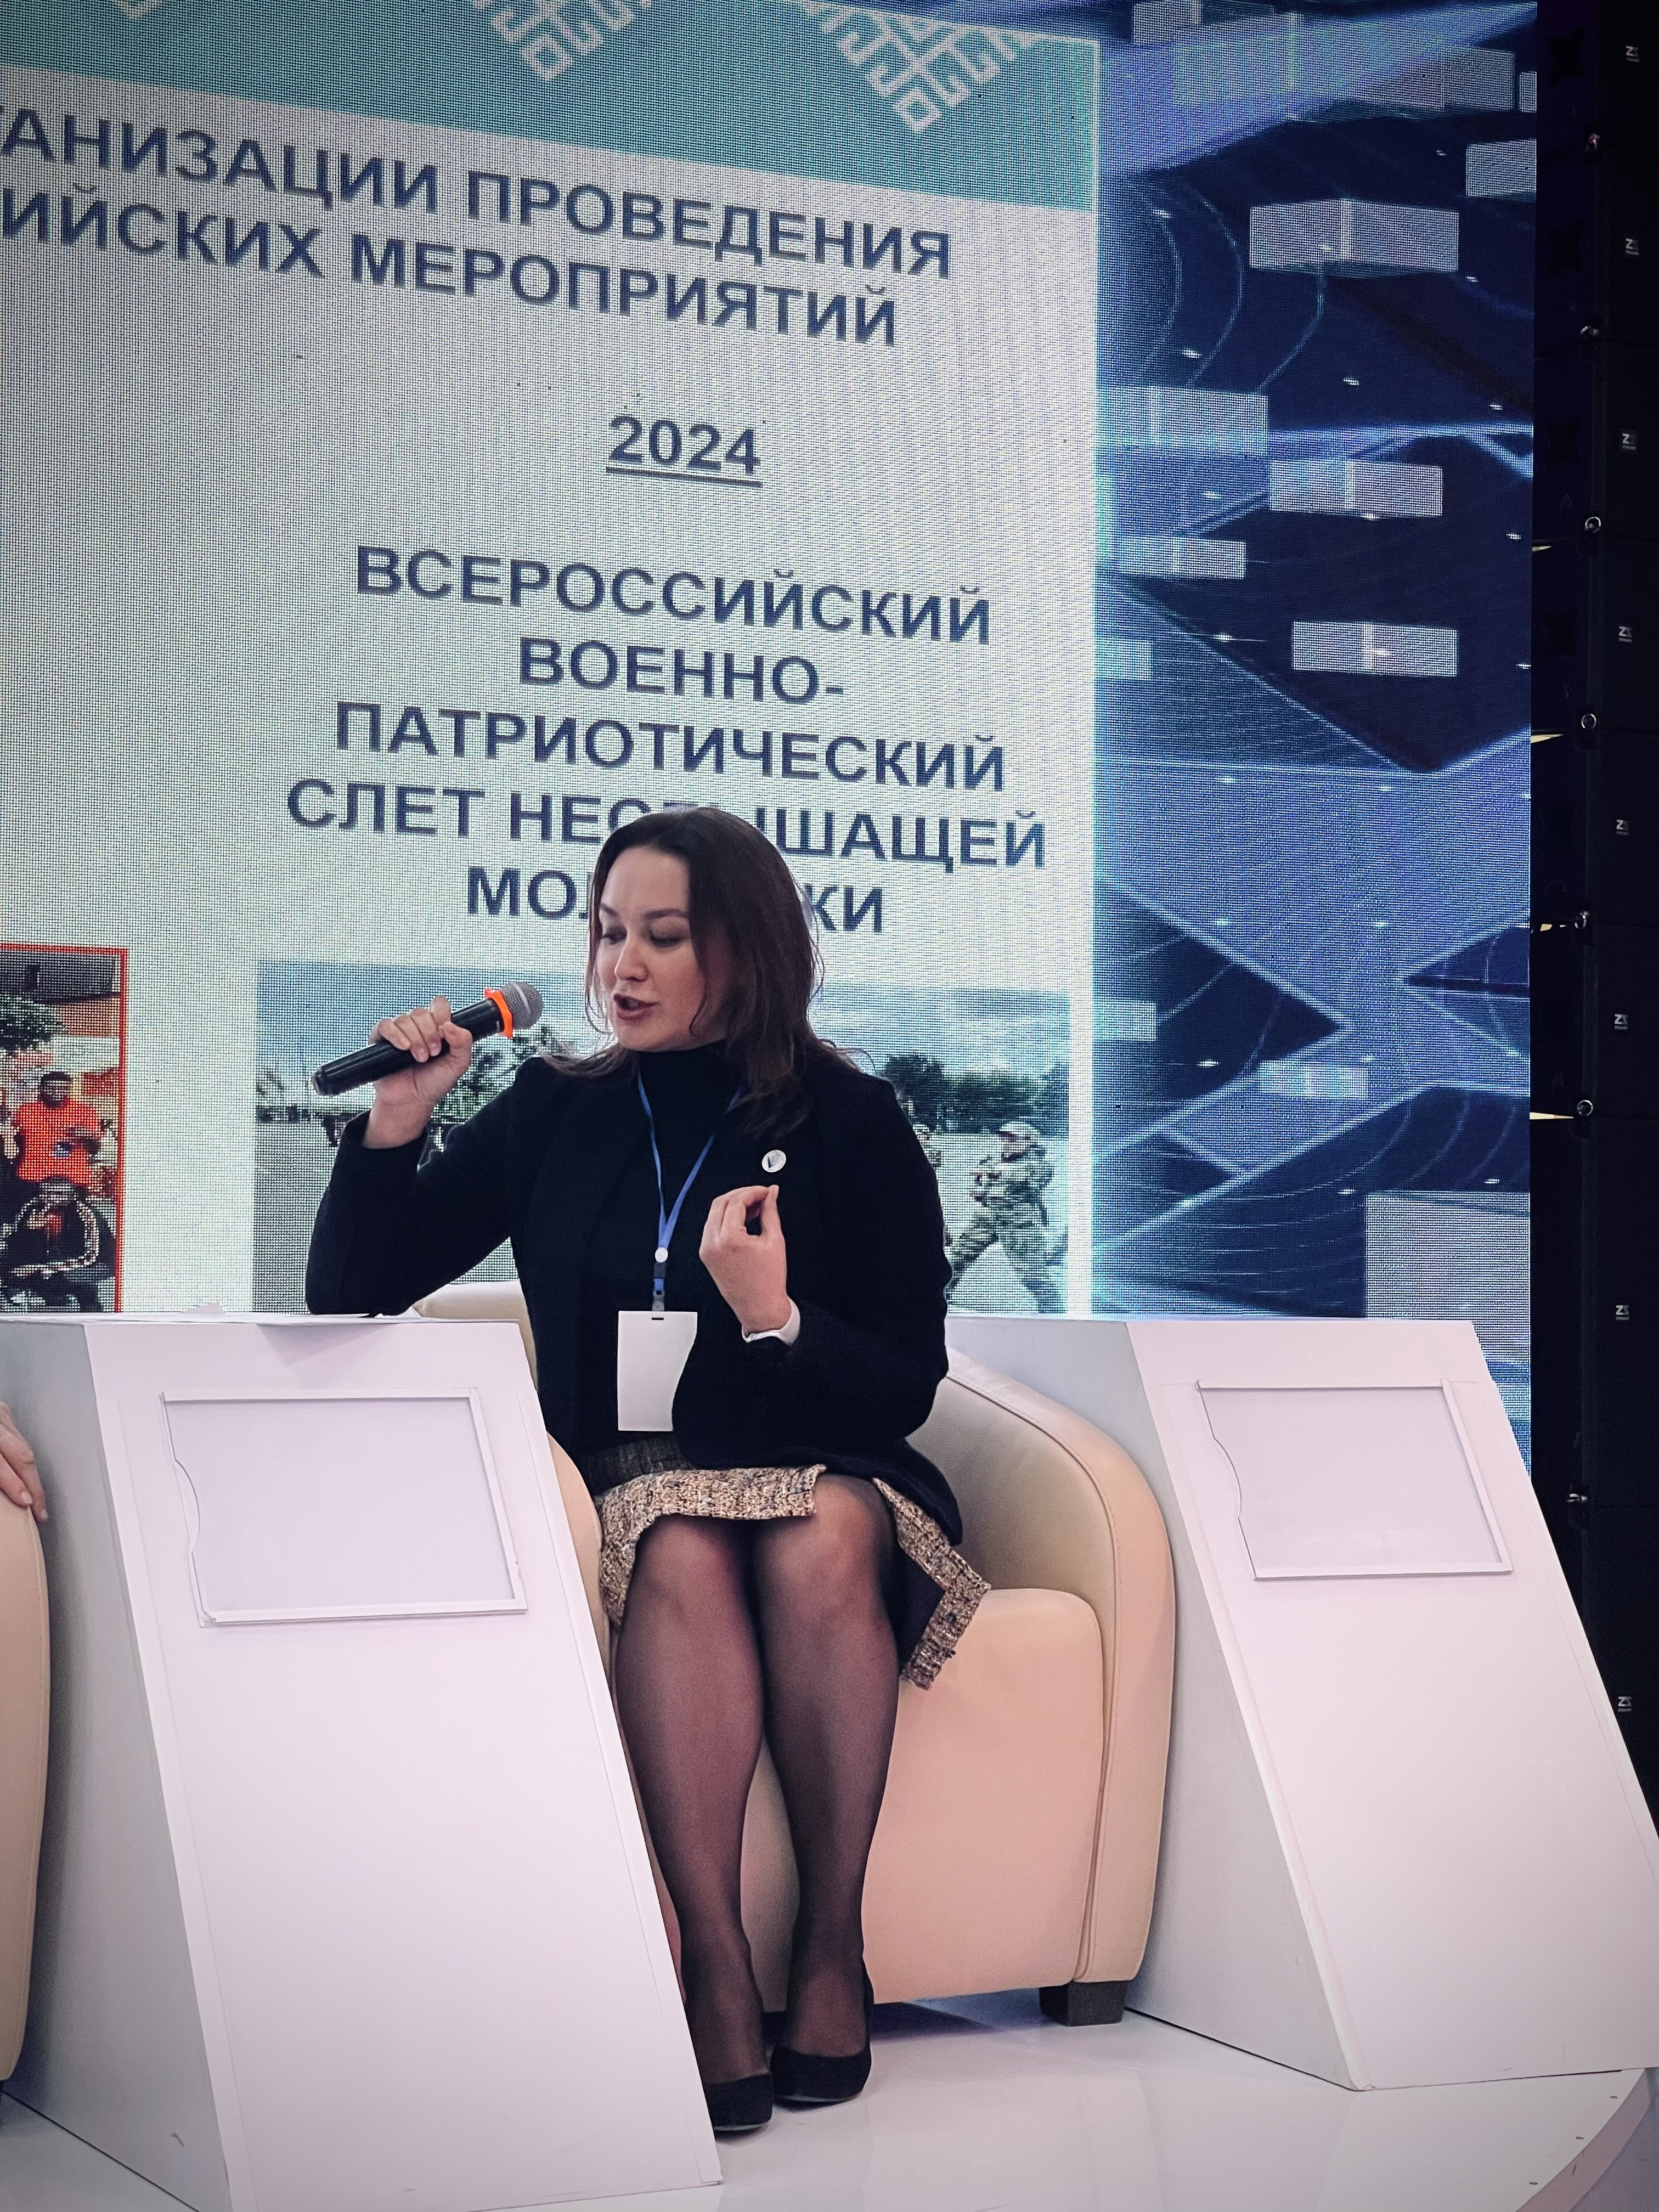 Председатель БашВОГ Ольга Шевнина стала спикером VII Гражданского форума РБ.